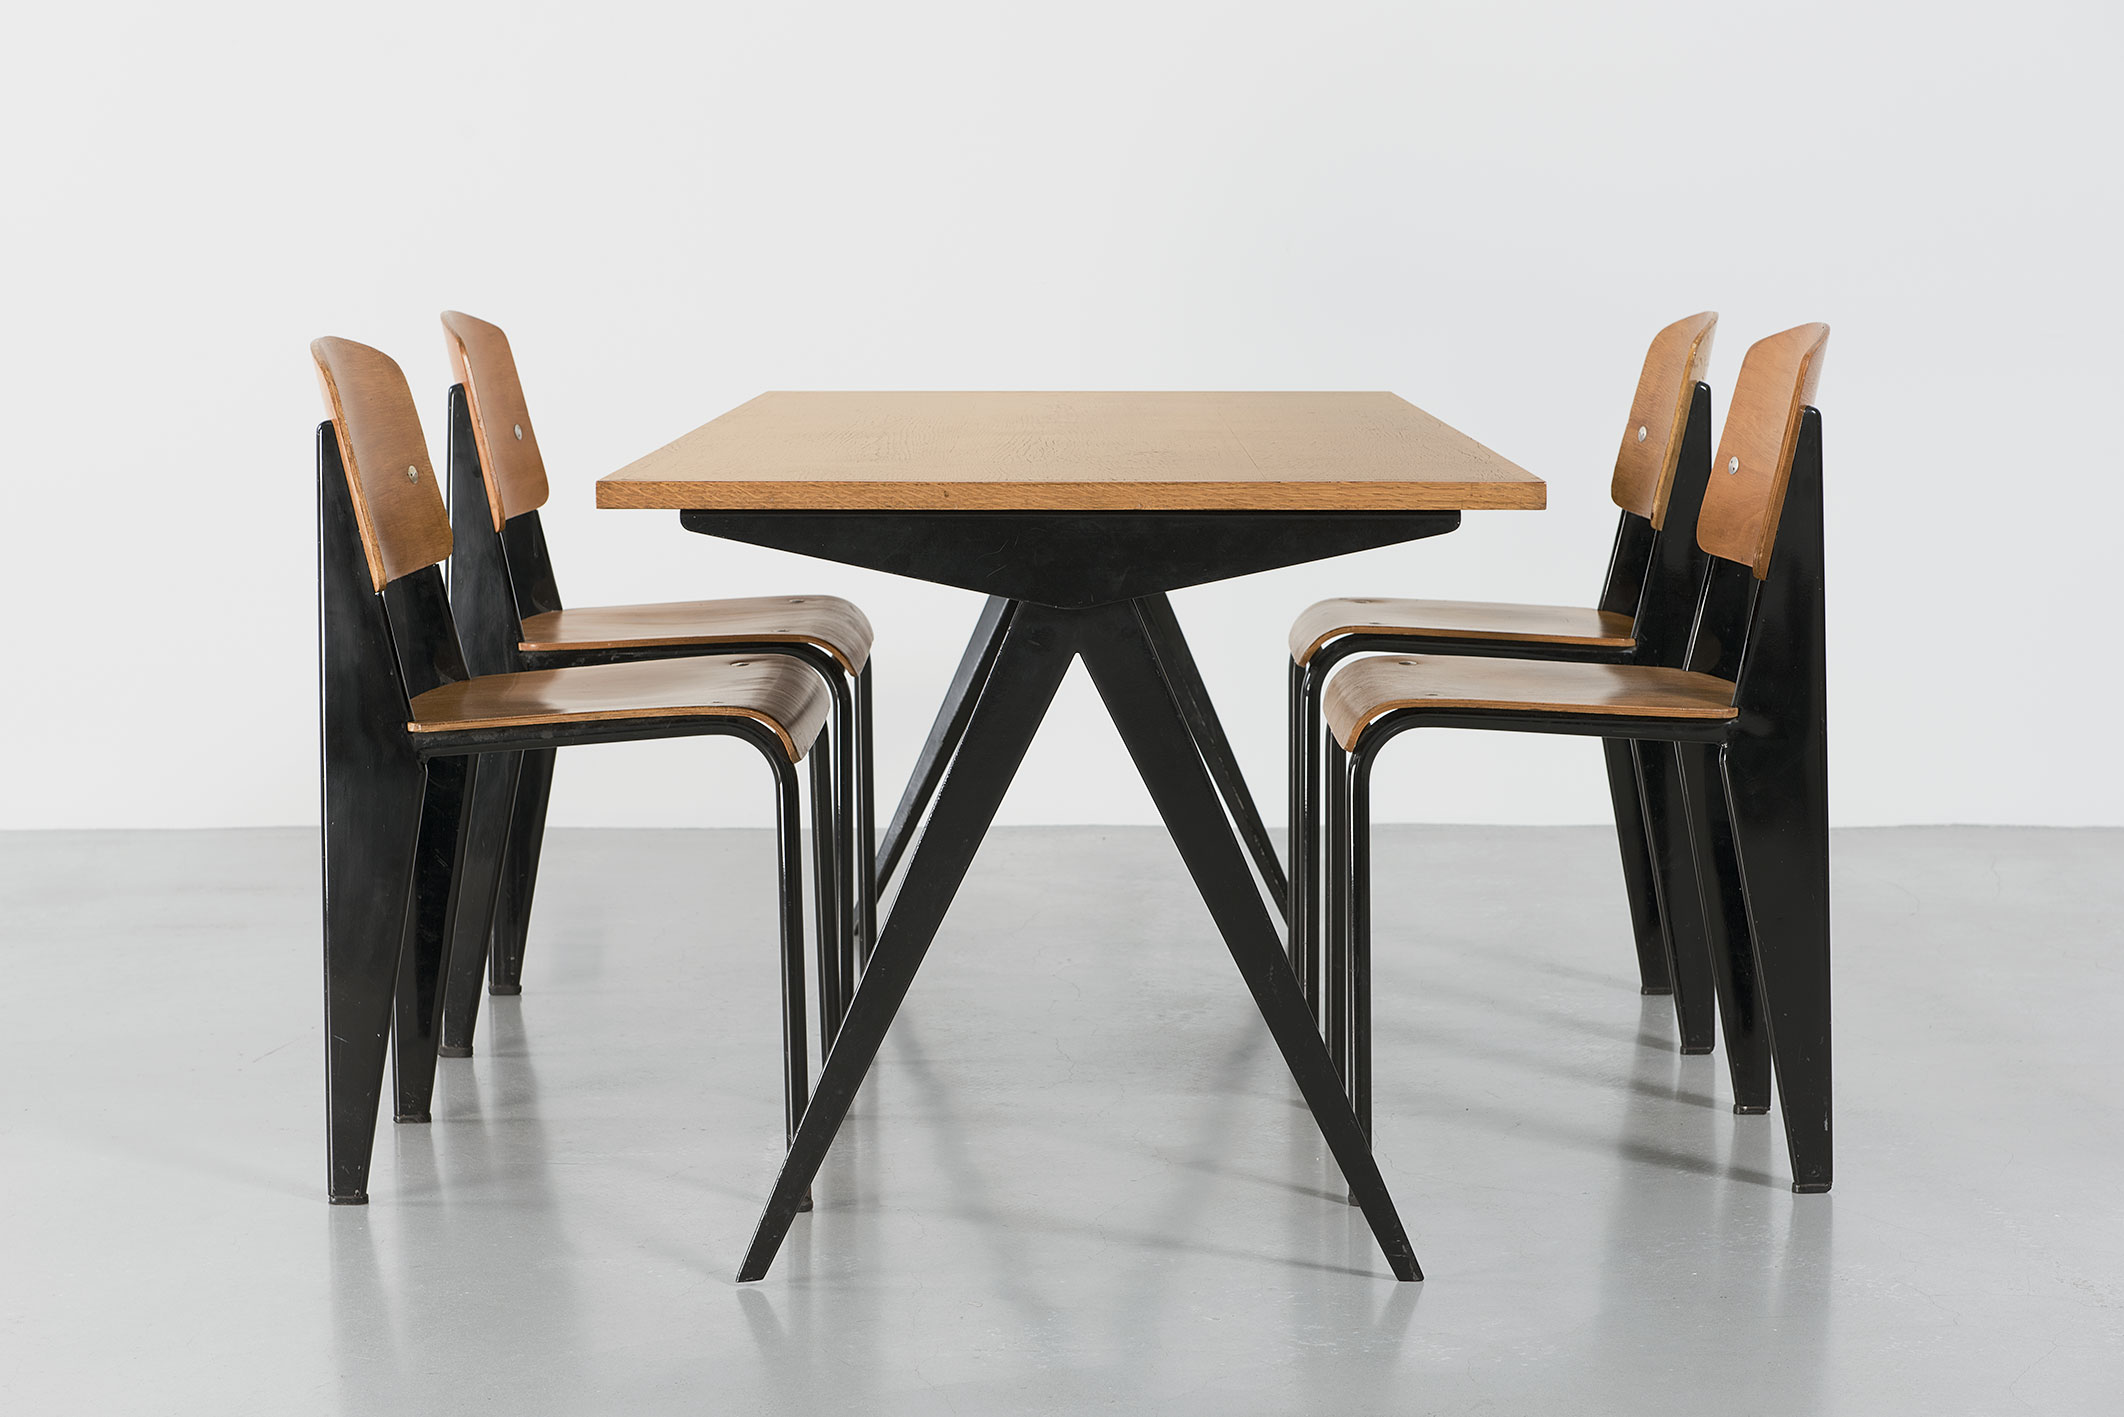 Cafétéria no. 512 table, 1953, and Métropole no. 305 chairs, 1950.